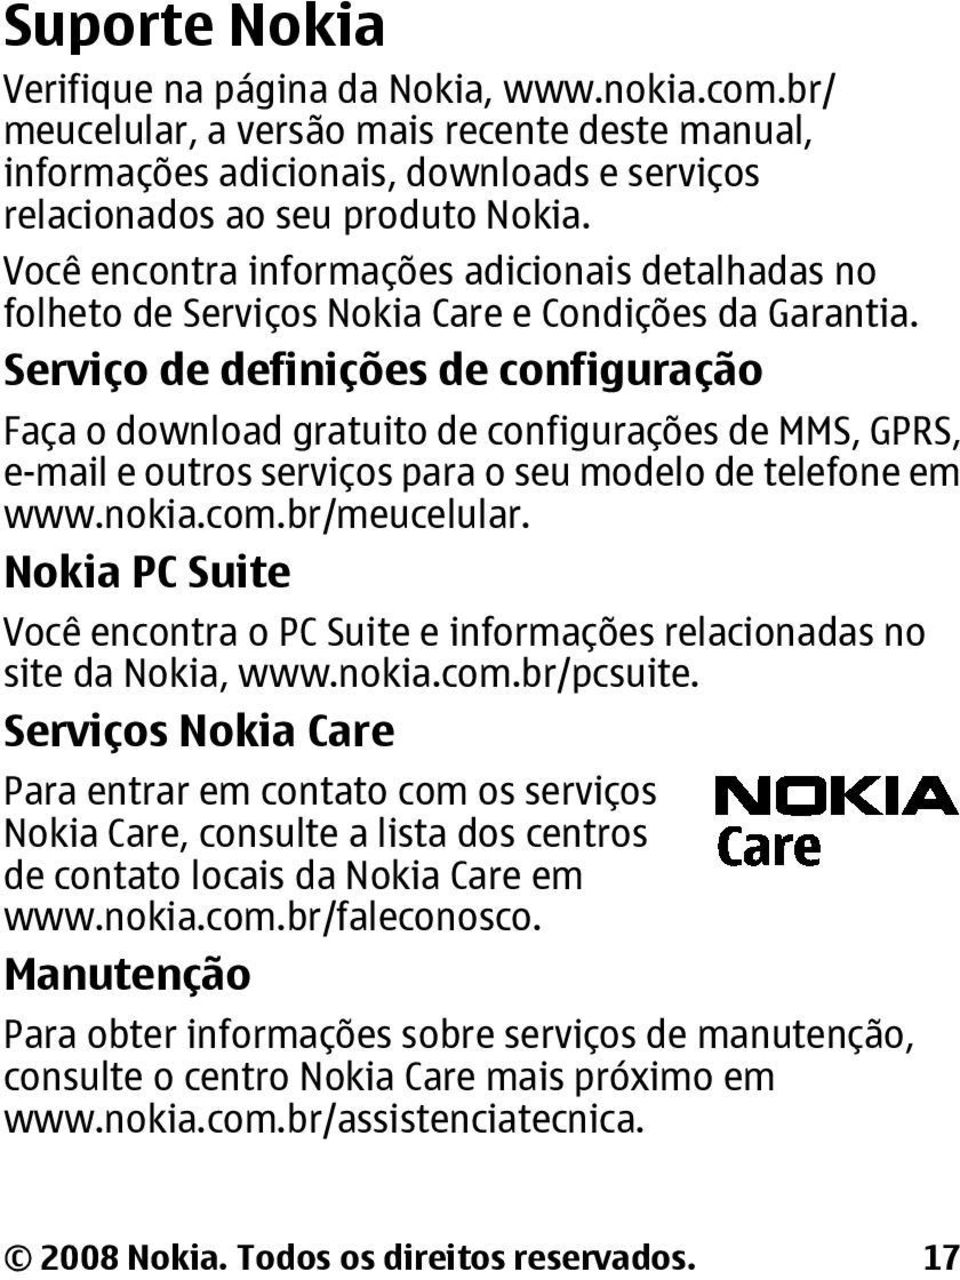 Serviço de definições de configuração Faça o download gratuito de configurações de MMS, GPRS, e-mail e outros serviços para o seu modelo de telefone em www.nokia.com.br/meucelular.